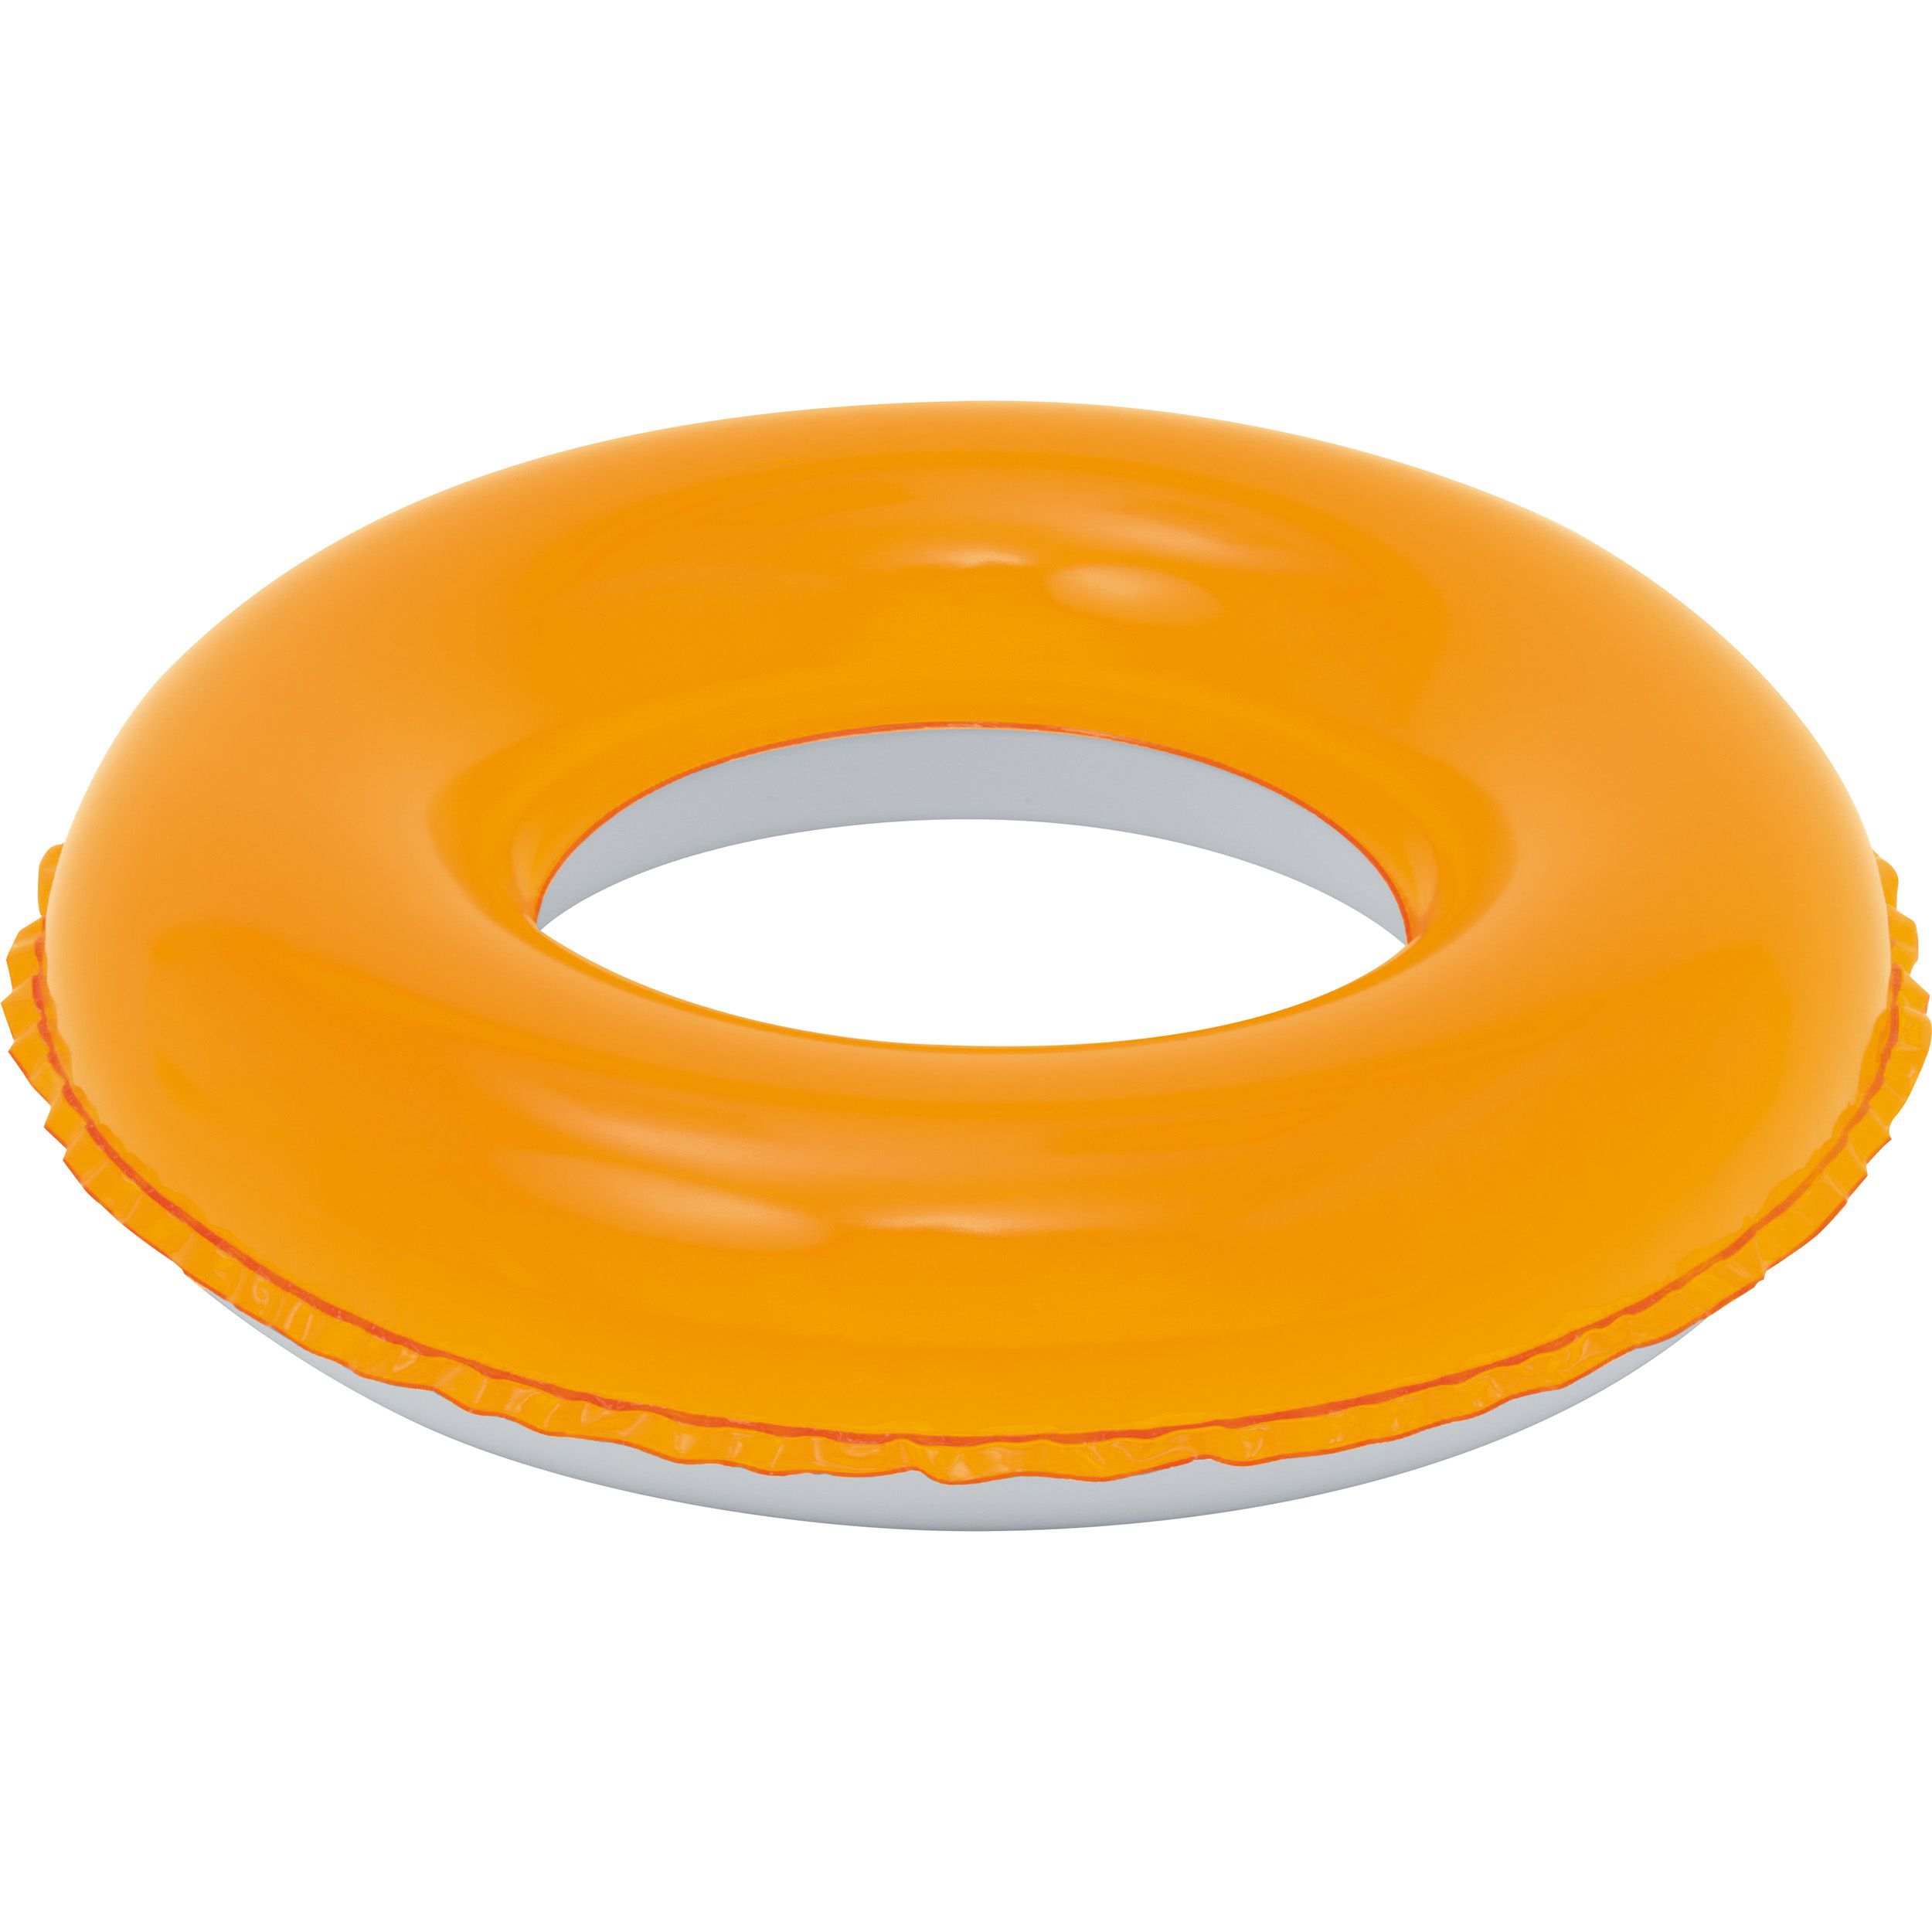 2 Farbiger Reifen zum Aufblasen aus phthalatfreiem PVC, orange